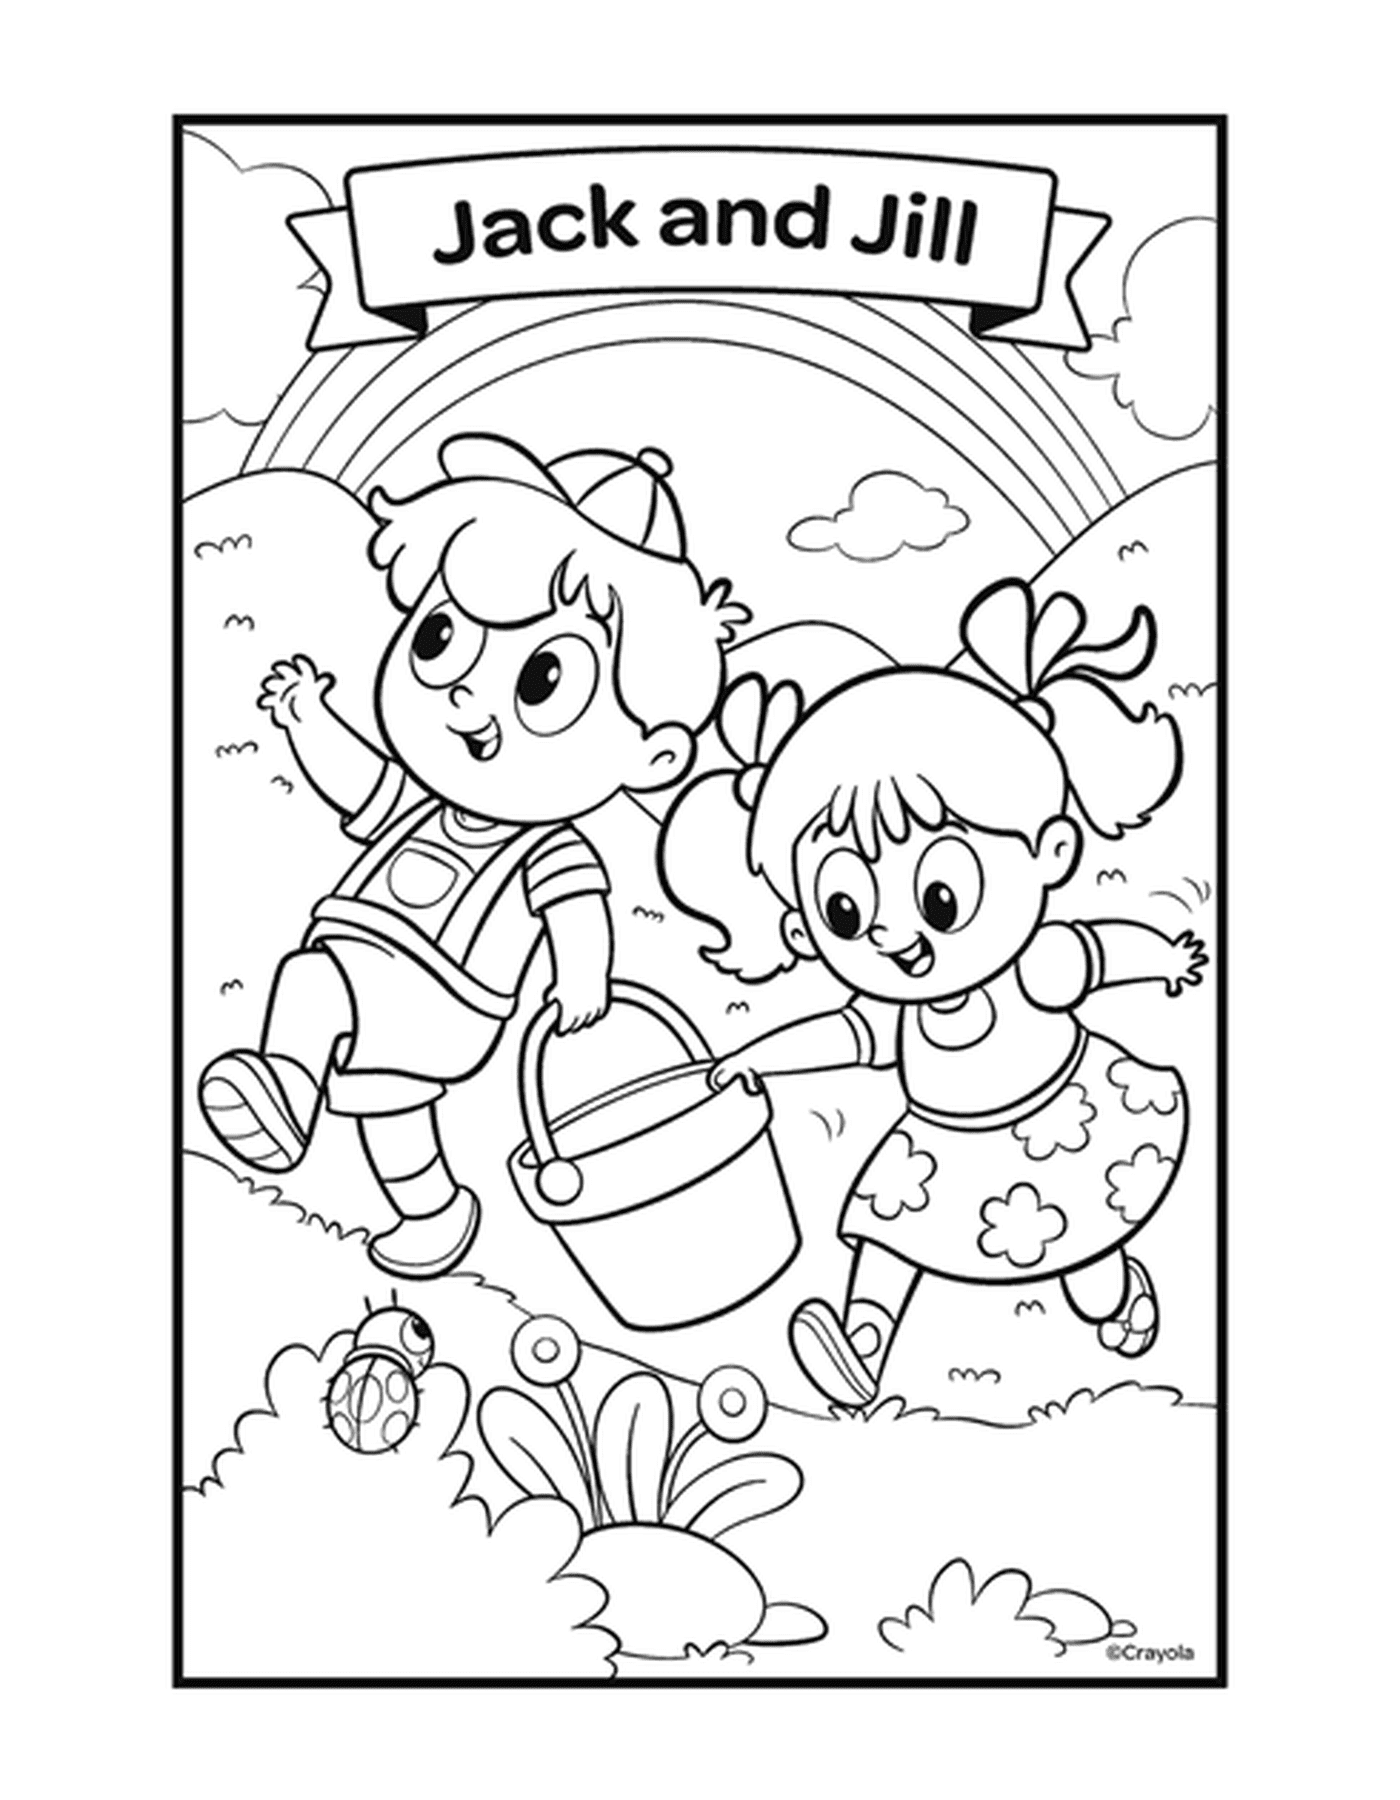  杰克和吉尔 和两个孩子玩一个桶子 